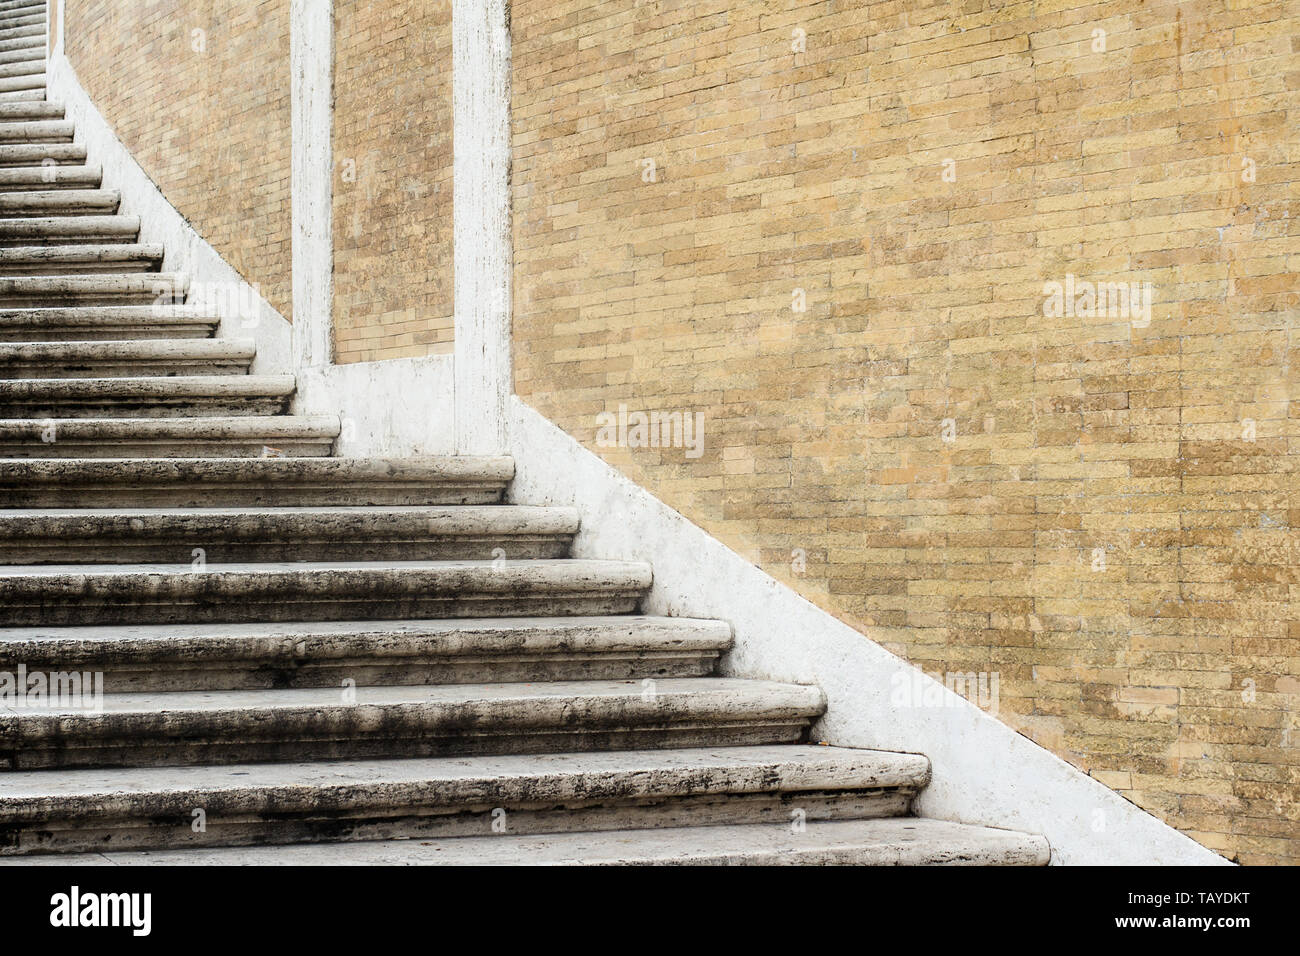 Gros plan vue perspective du modèle de l'échelle en spirale en pierre escalier classique près d'un mur de brique marron clair copyspace disponible Banque D'Images